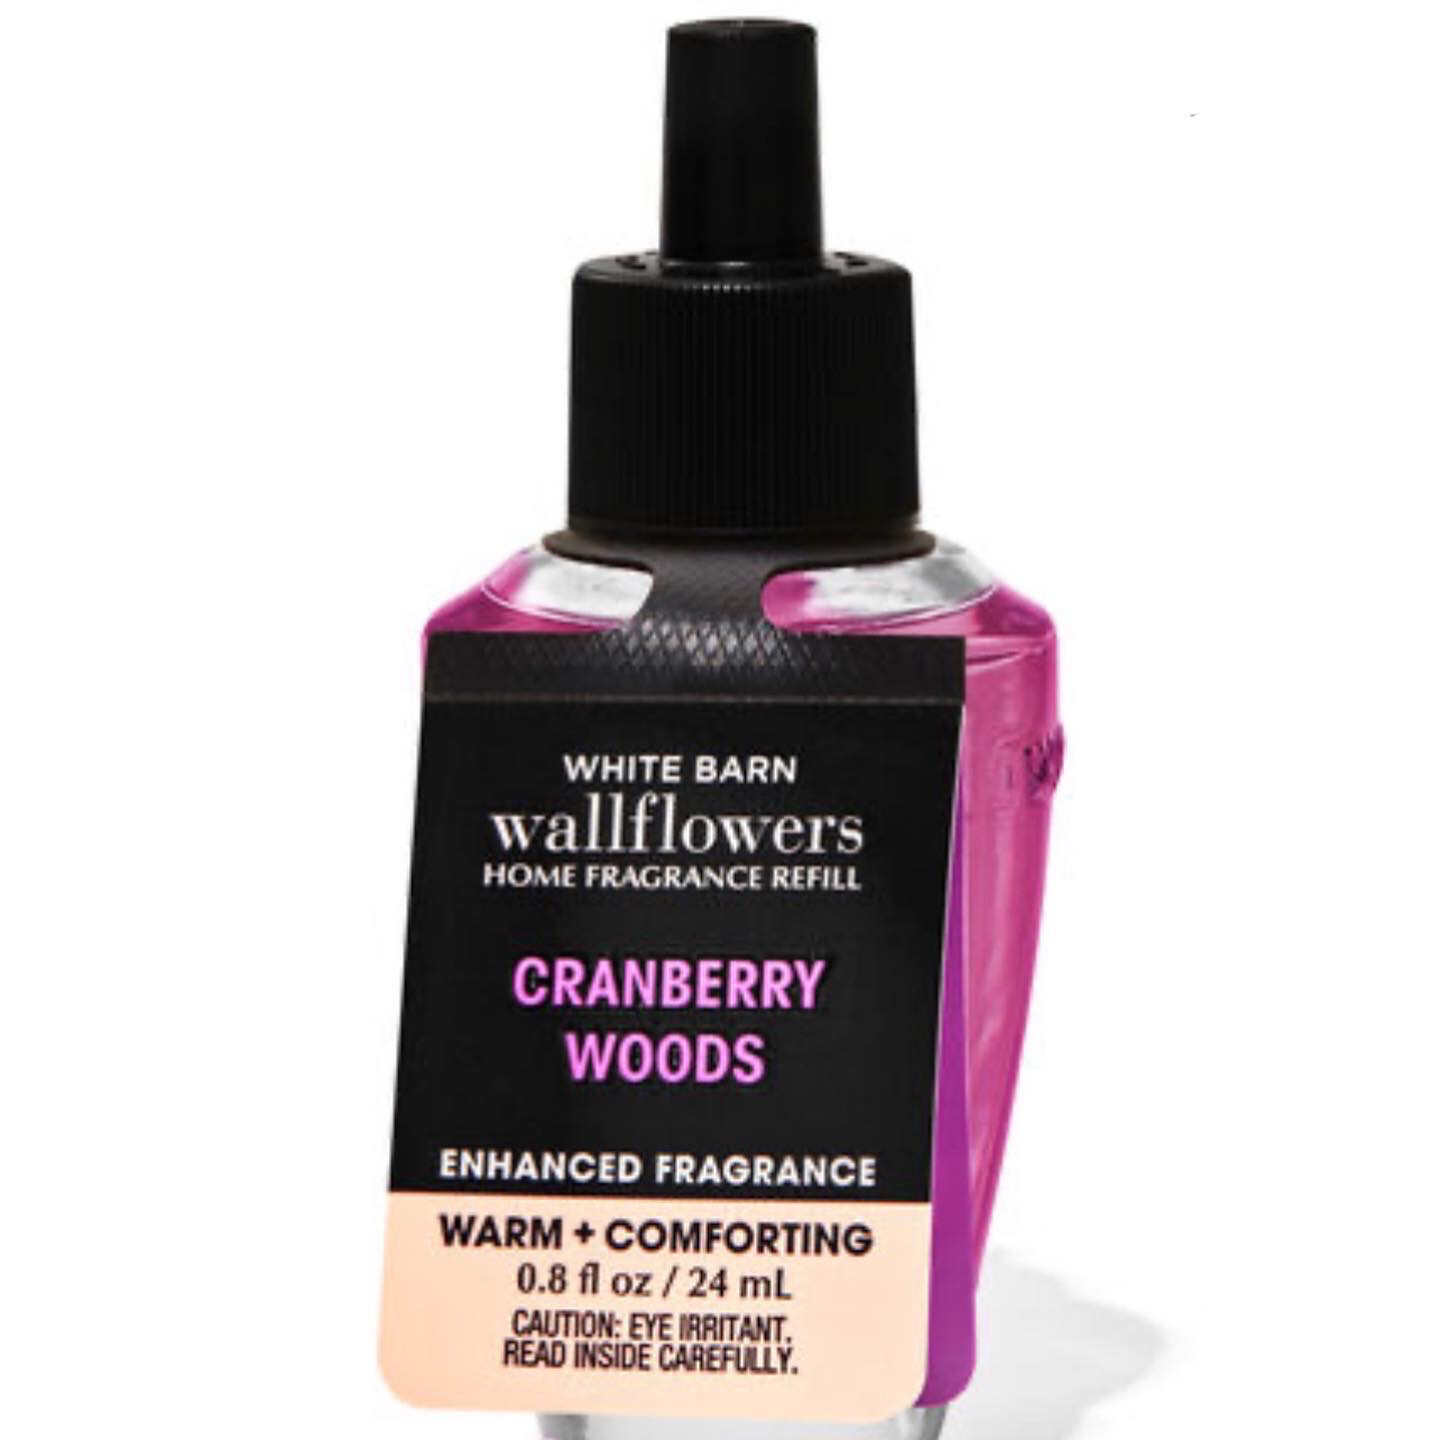 Cranberry Woods Wallflower Refill